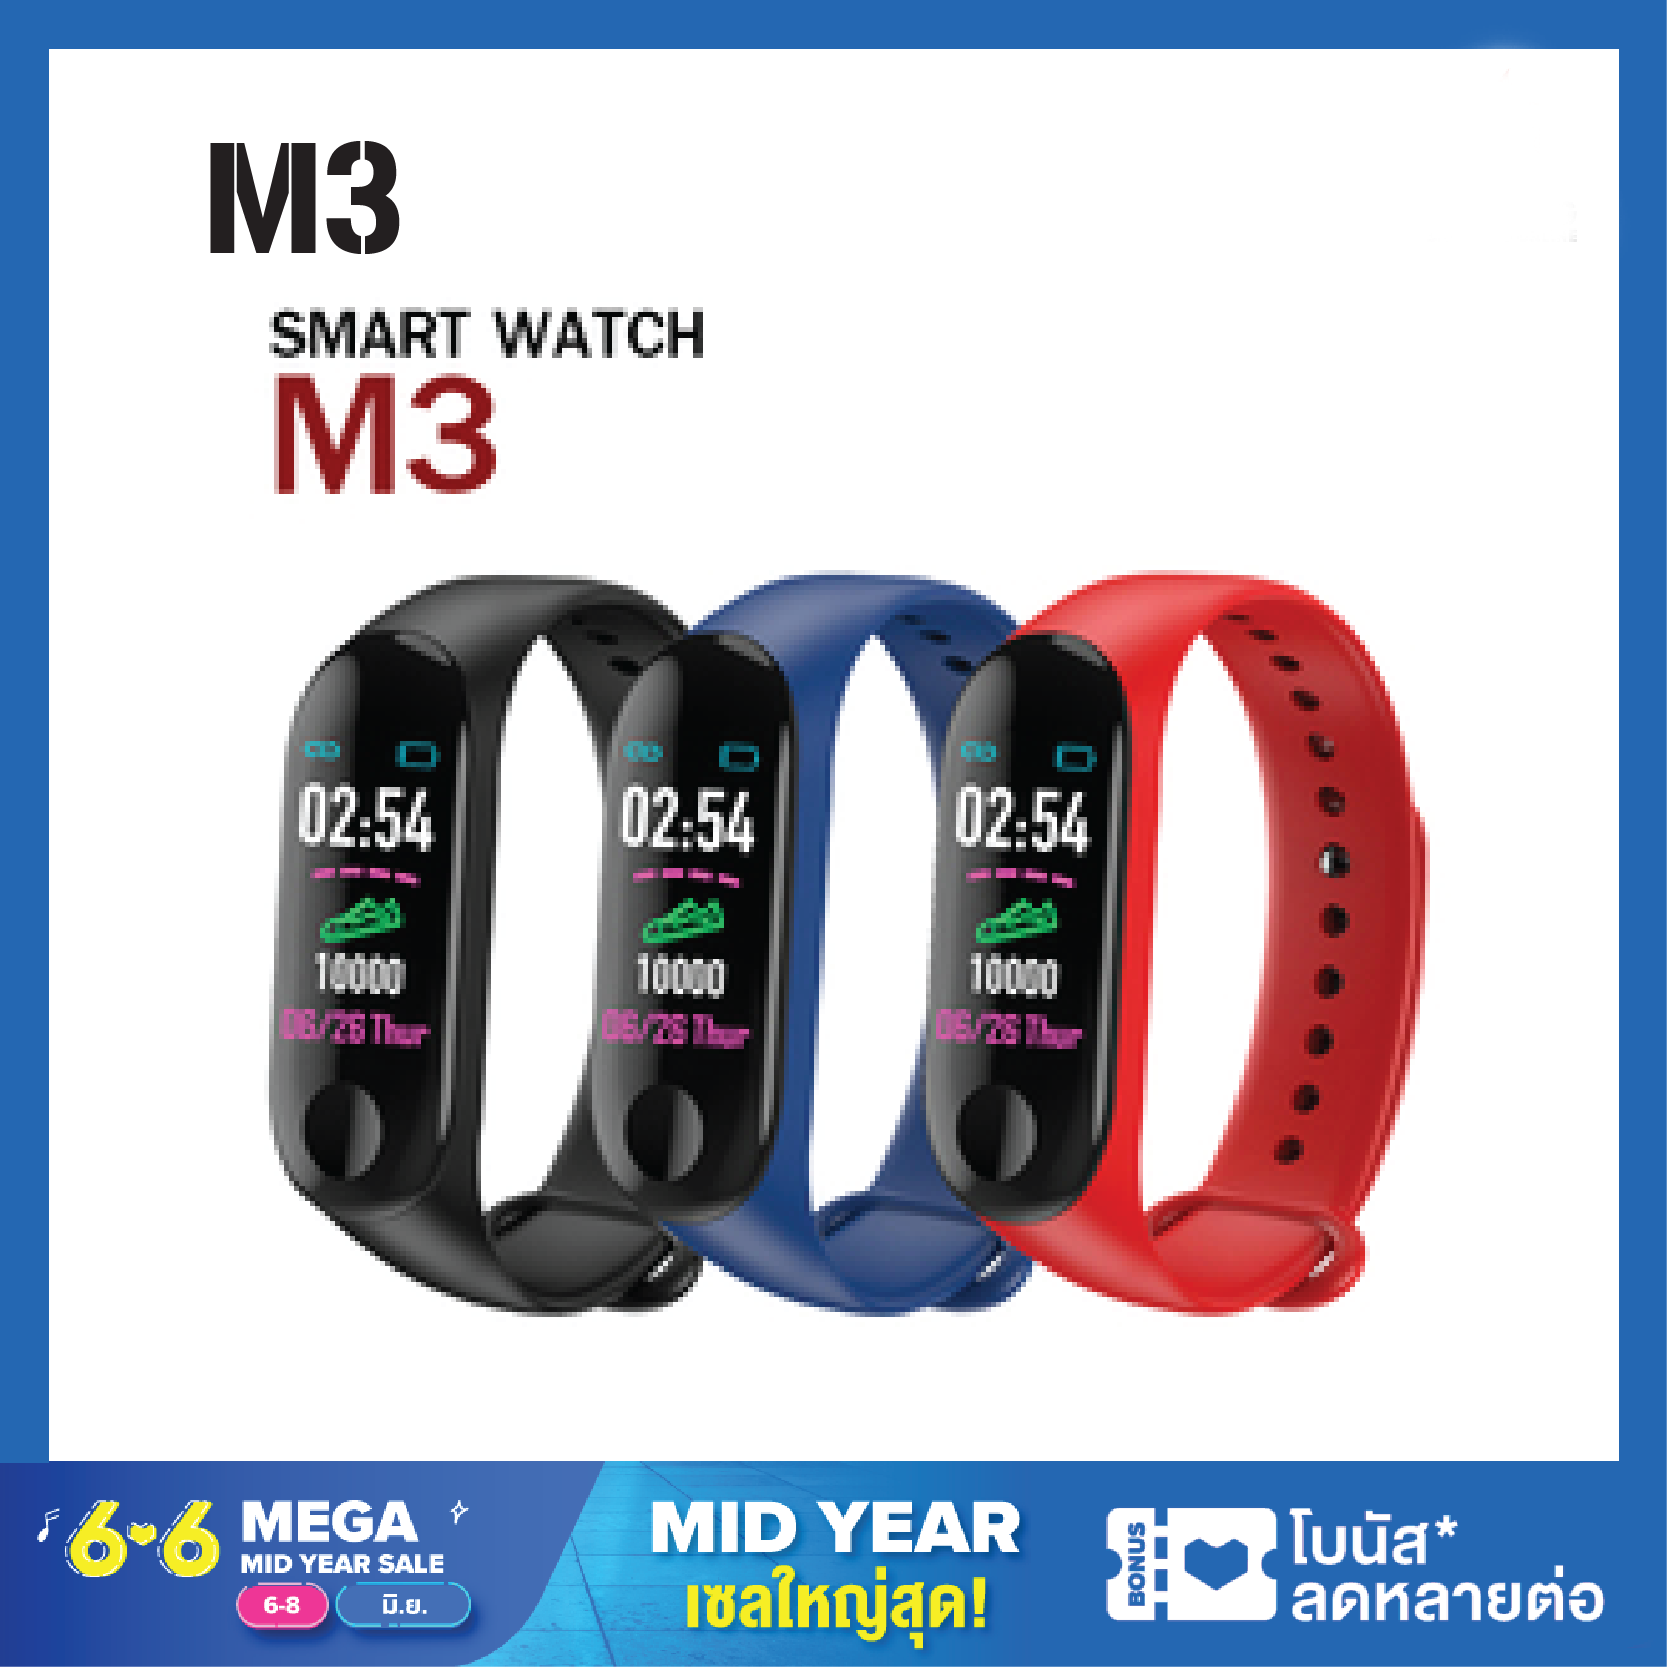 นาฬิกาสมาร์ท นาฬิกาอัจริยะ M3 smart watch Smart Band ข้อมือสมาร์ทบลูทูธ สายรัดข้อมืออัจฉริยะ Blood Pressure Heart Rateวัดหัวใจ ความดันโลหิต วัดการวิ่งเดิน Multiple colors Support แจ้งเตือน ข้อความ